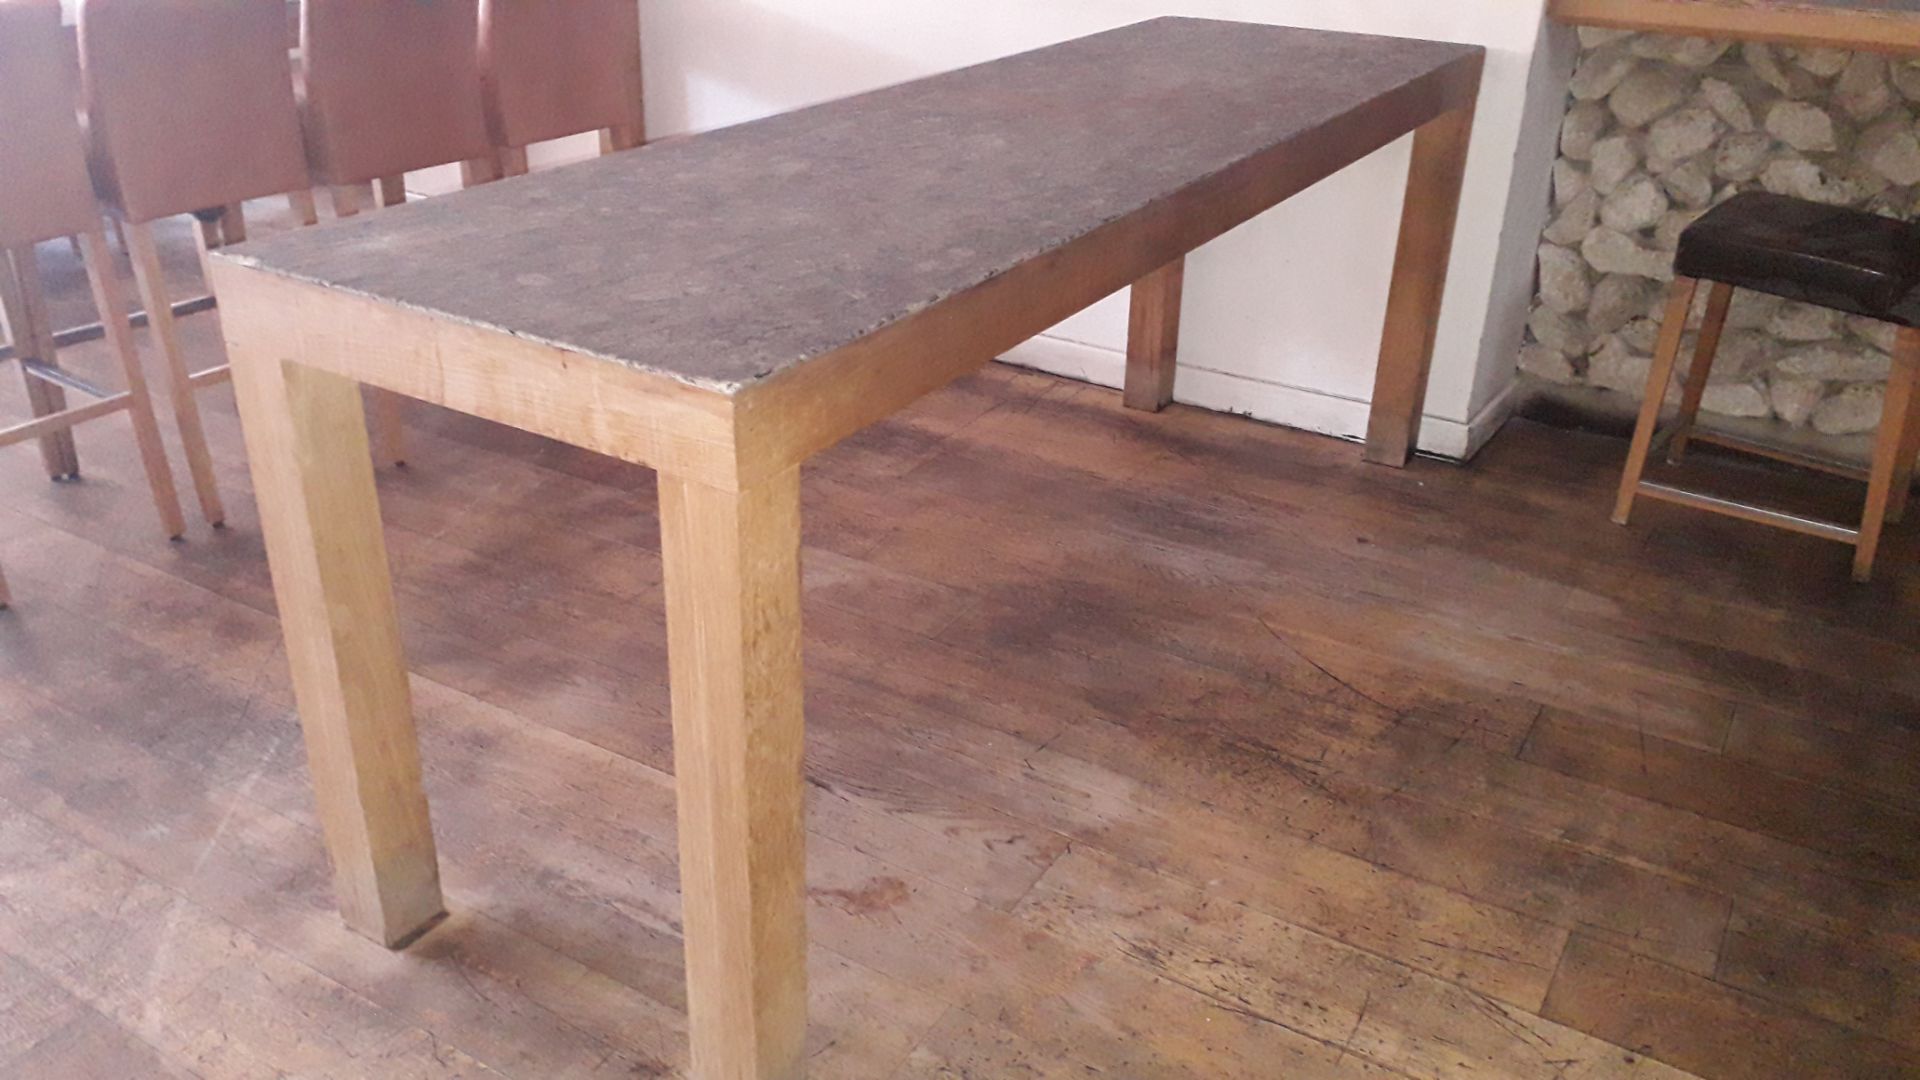 Oak Framed Granite Topped Bar Table, 2,400x700mm – - Image 3 of 3